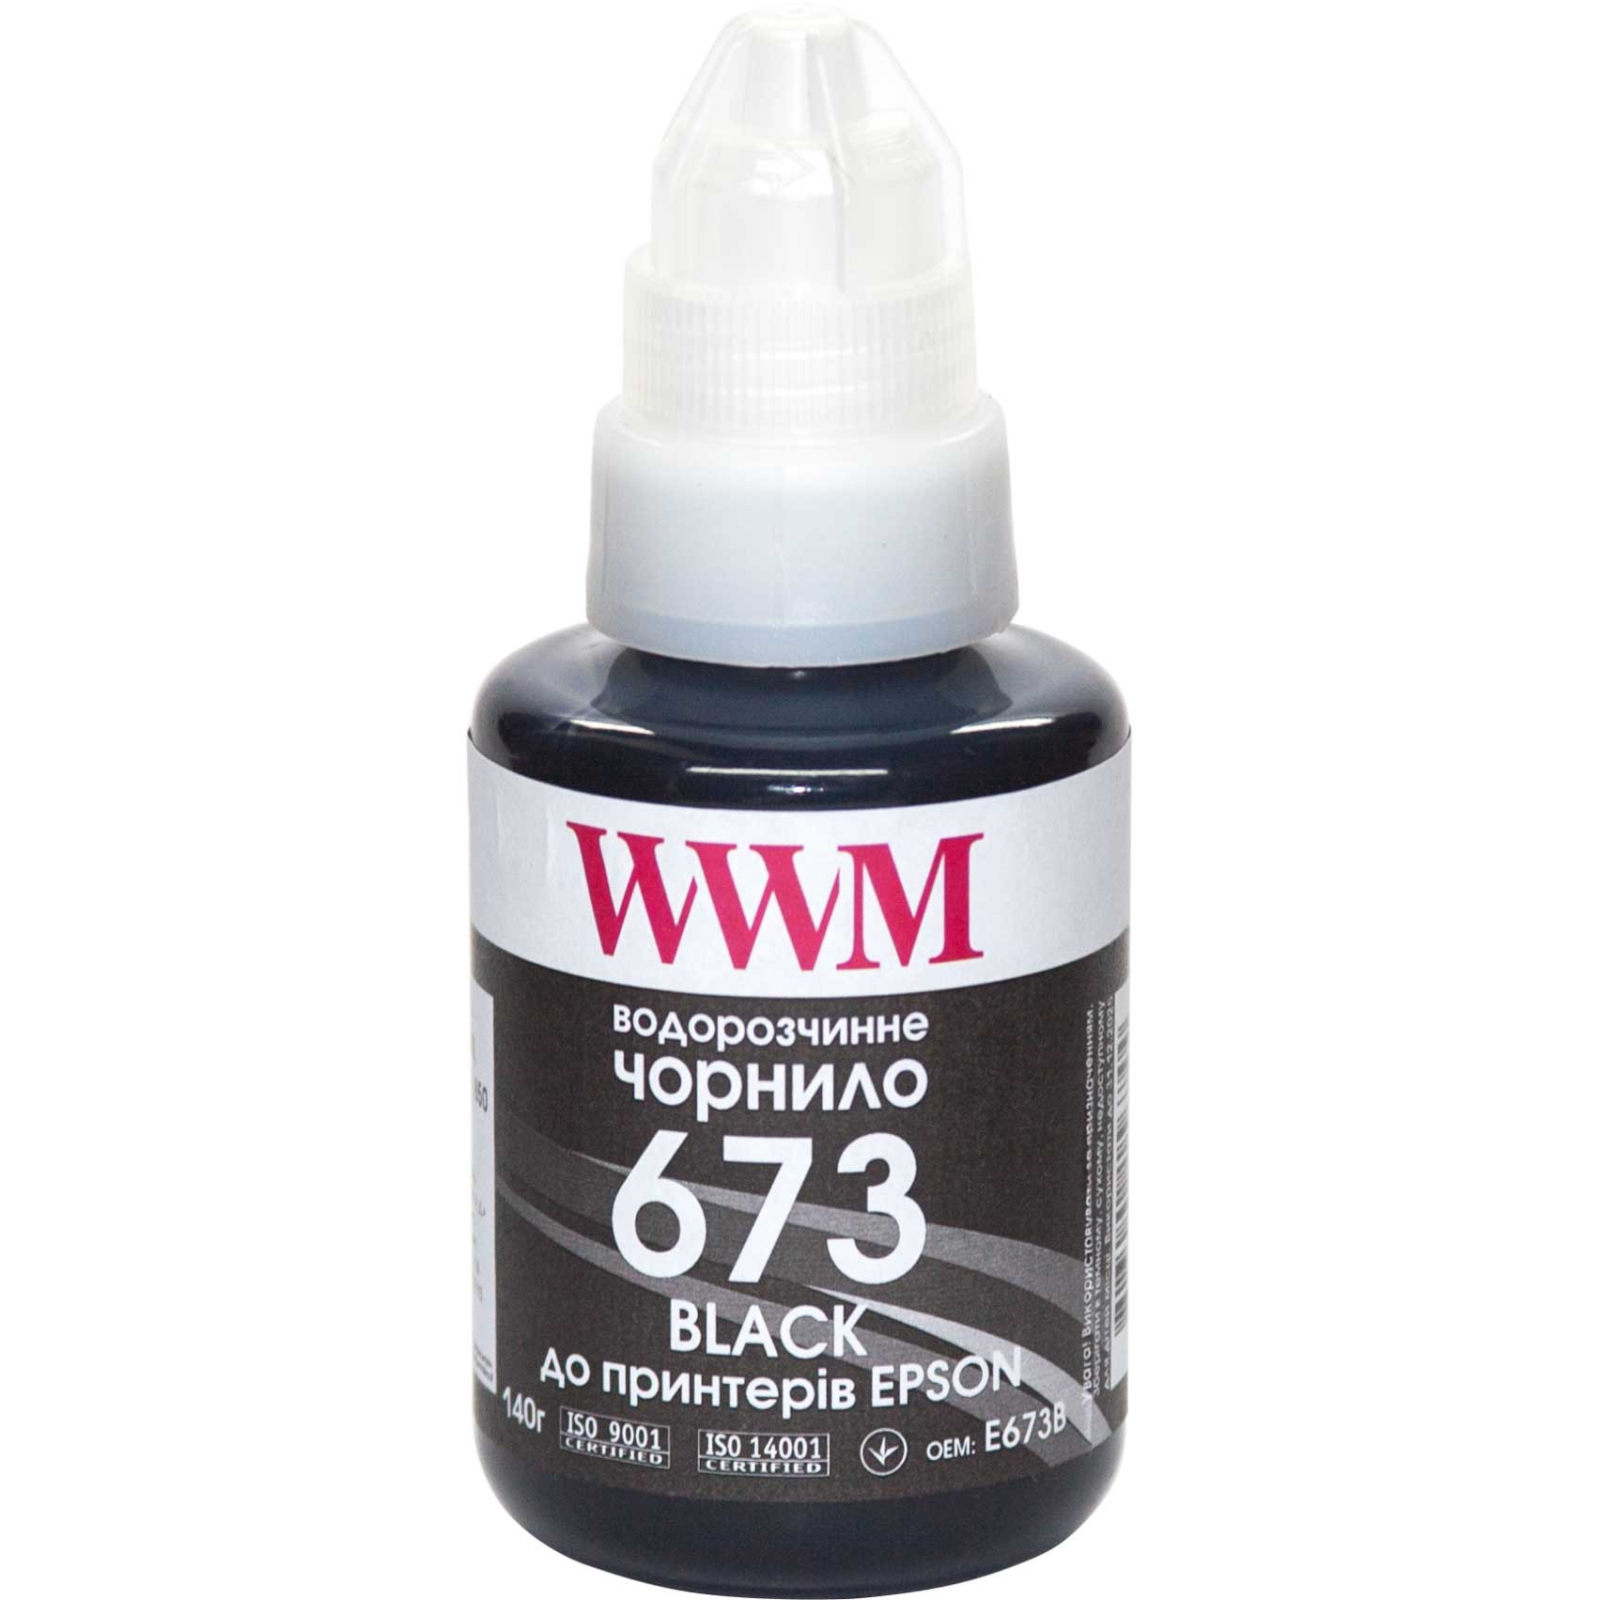 Чернила WWM Epson L800 140г Black (E673B)